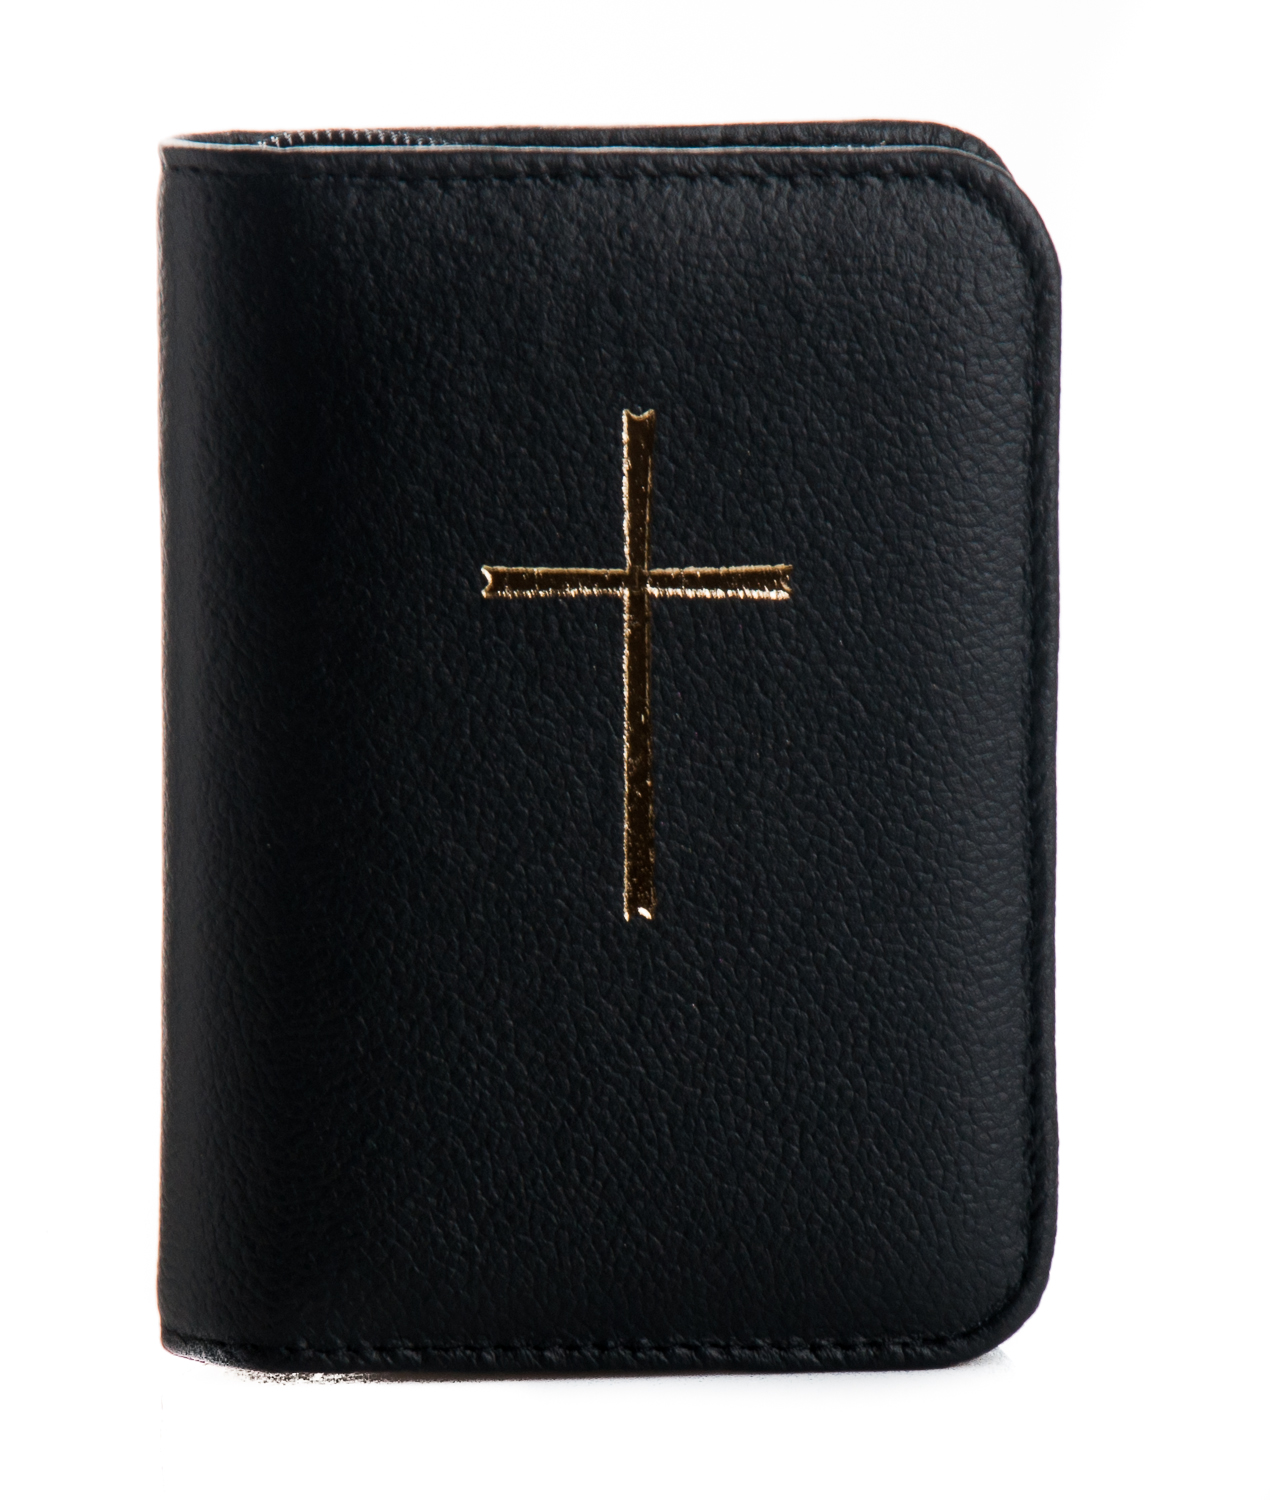 Gotteslobhülle für Taschenbuchausgabe - Leder mit Kreuzsymbol